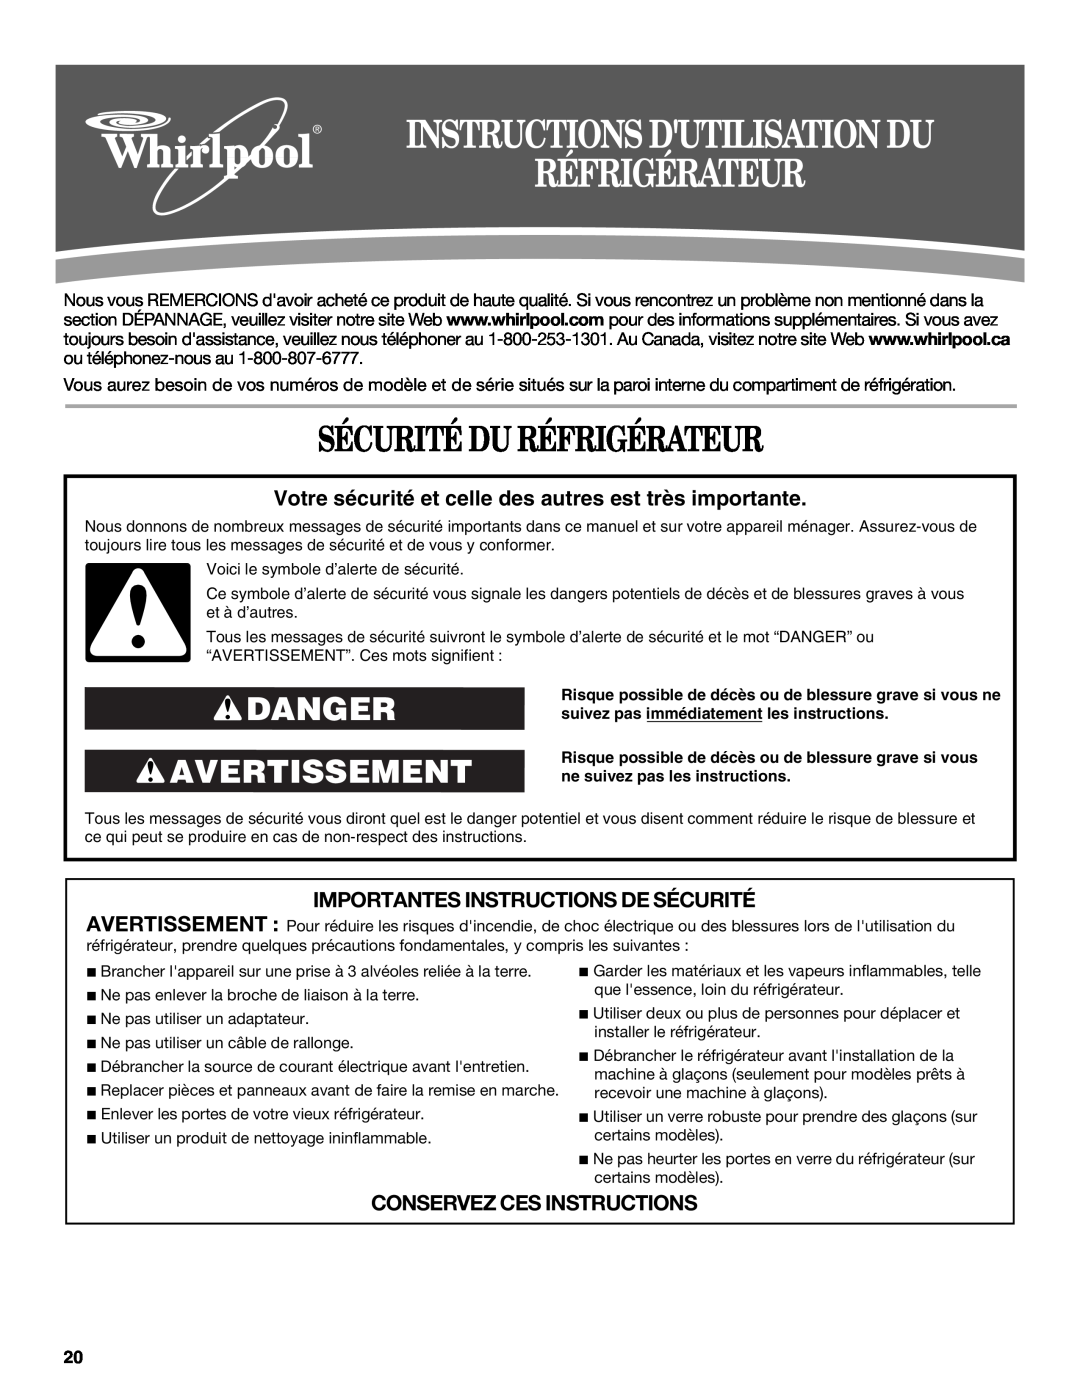 Whirlpool W10329360A Sécurité Du Réfrigérateur, Danger Avertissement, Importantes Instructions De Sécurité 